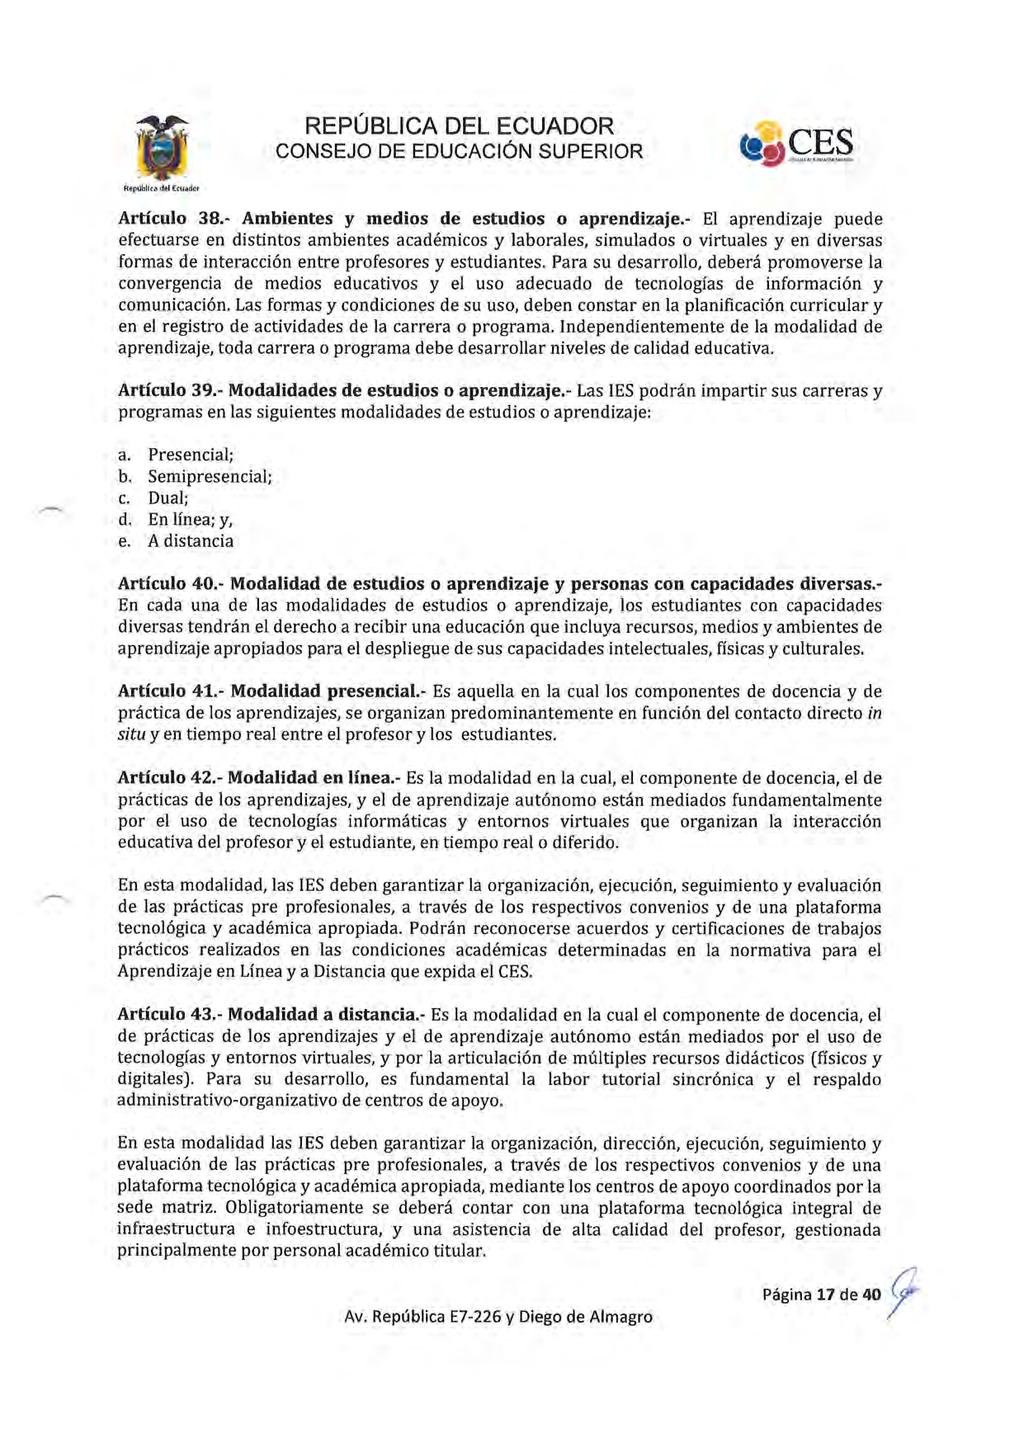 Repúbllc. del Ecuador Artículo 38.- Ambientes y medios de estudios o aprendizaje.